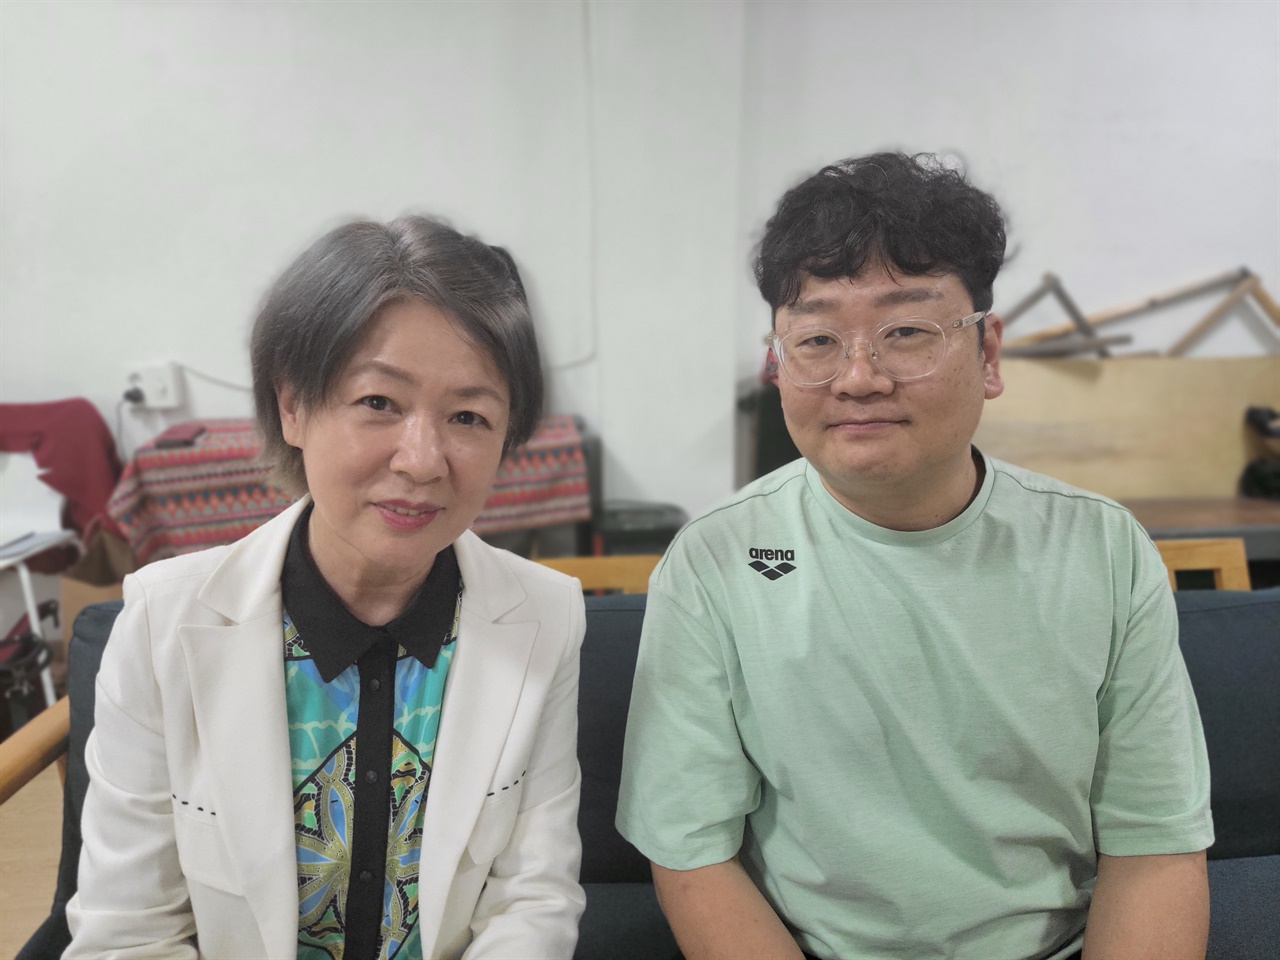  인터뷰에 응한 연극 <니 부모 얼굴이 보고 싶다> 학생주임 ‘하라다 모이치’ 역 권남희 배우, 정범철 연출